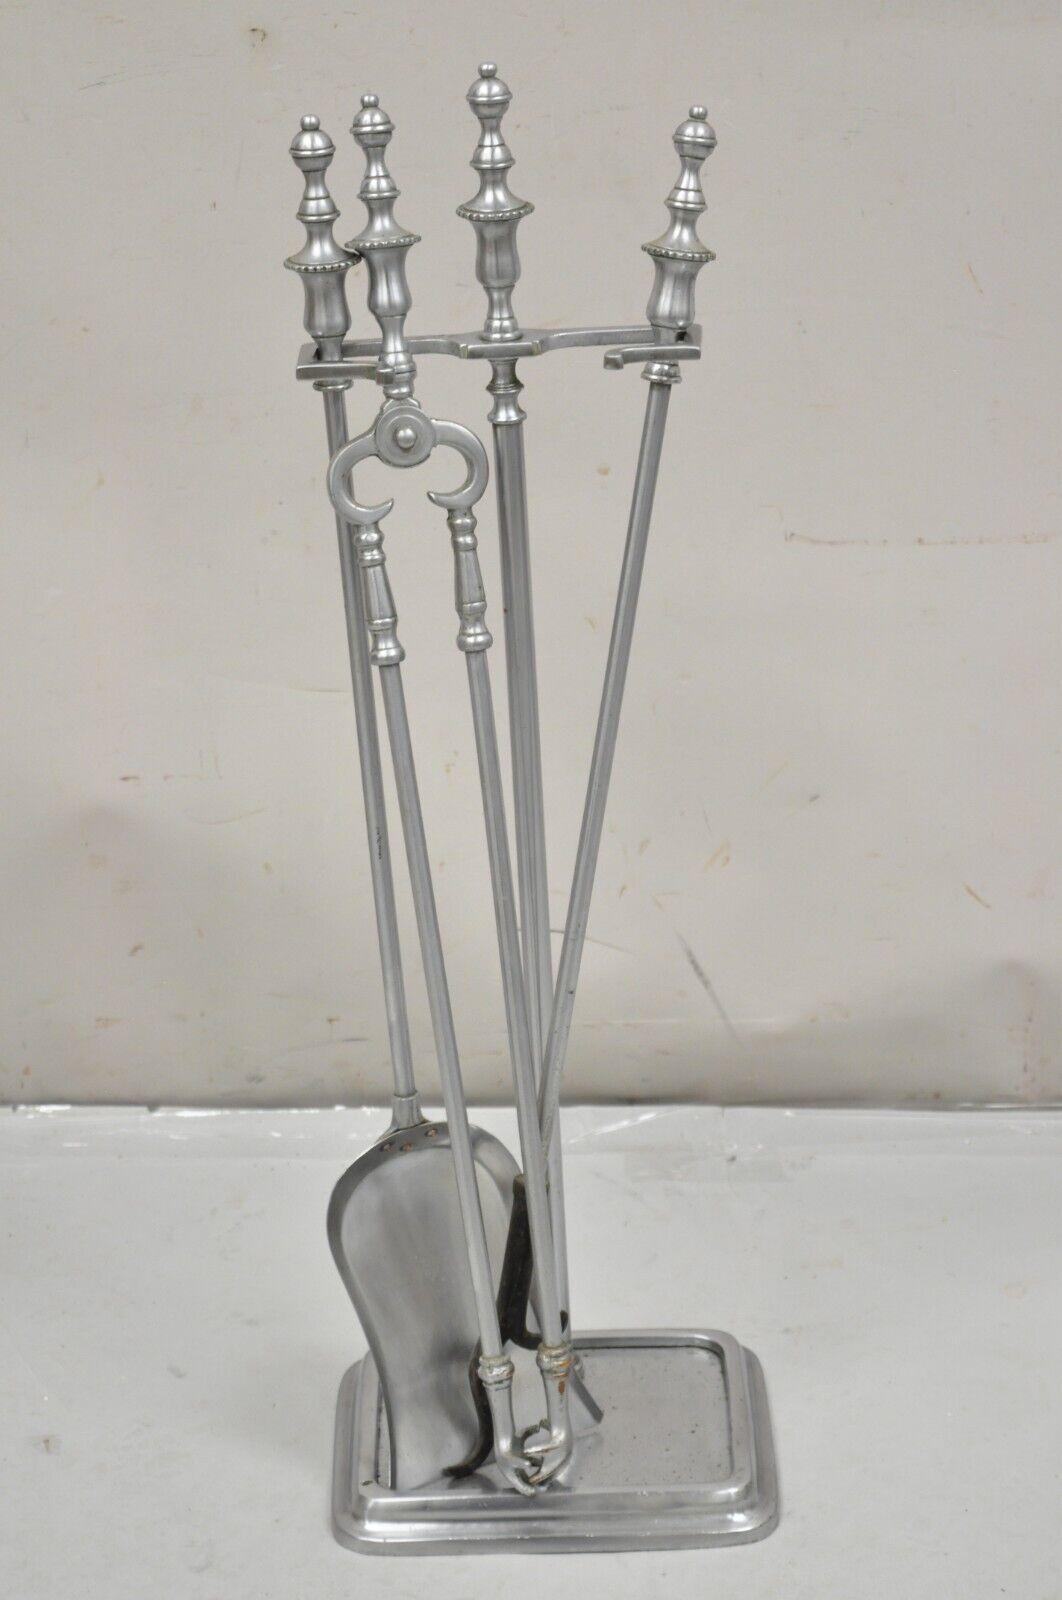 Vintage Silver Pewter Metal Federal Style Urn Finial Fireplace Tool Set - 4 Pc Set. L'article présenté comprend 3 outils et 1 support, finition étain, très bel ensemble vintage. Circa Mid 20th Century. Dimensions : 30,5